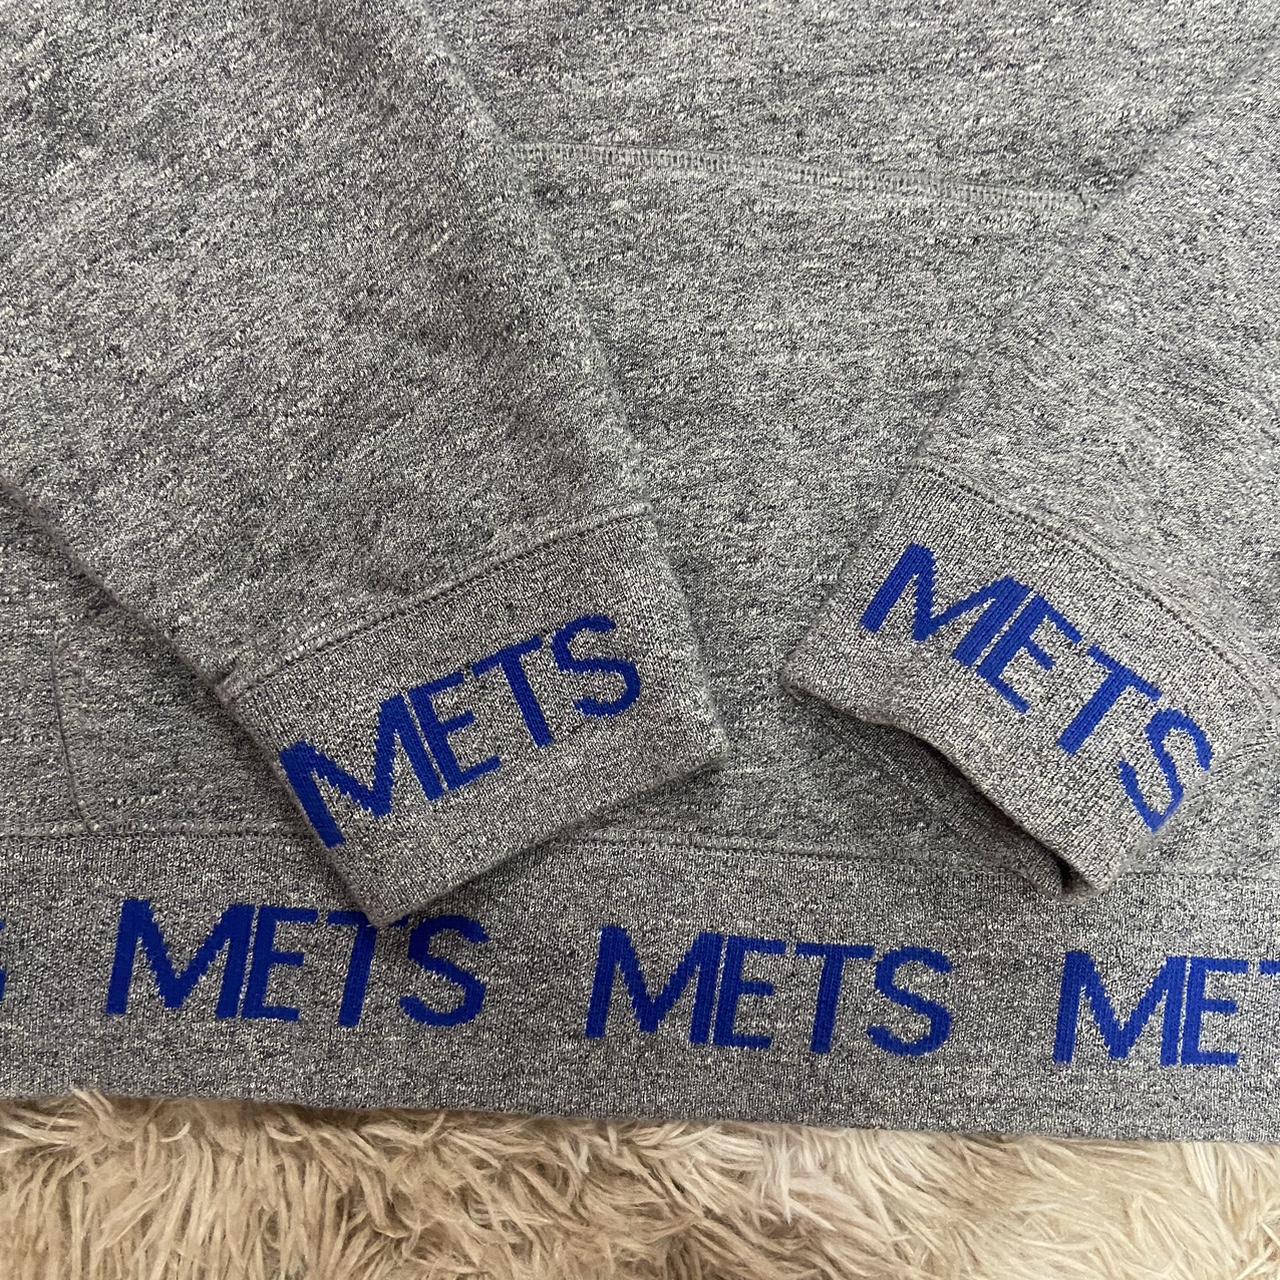 Mets NY baseball sweatshirt hoodie Worn but in good - Depop